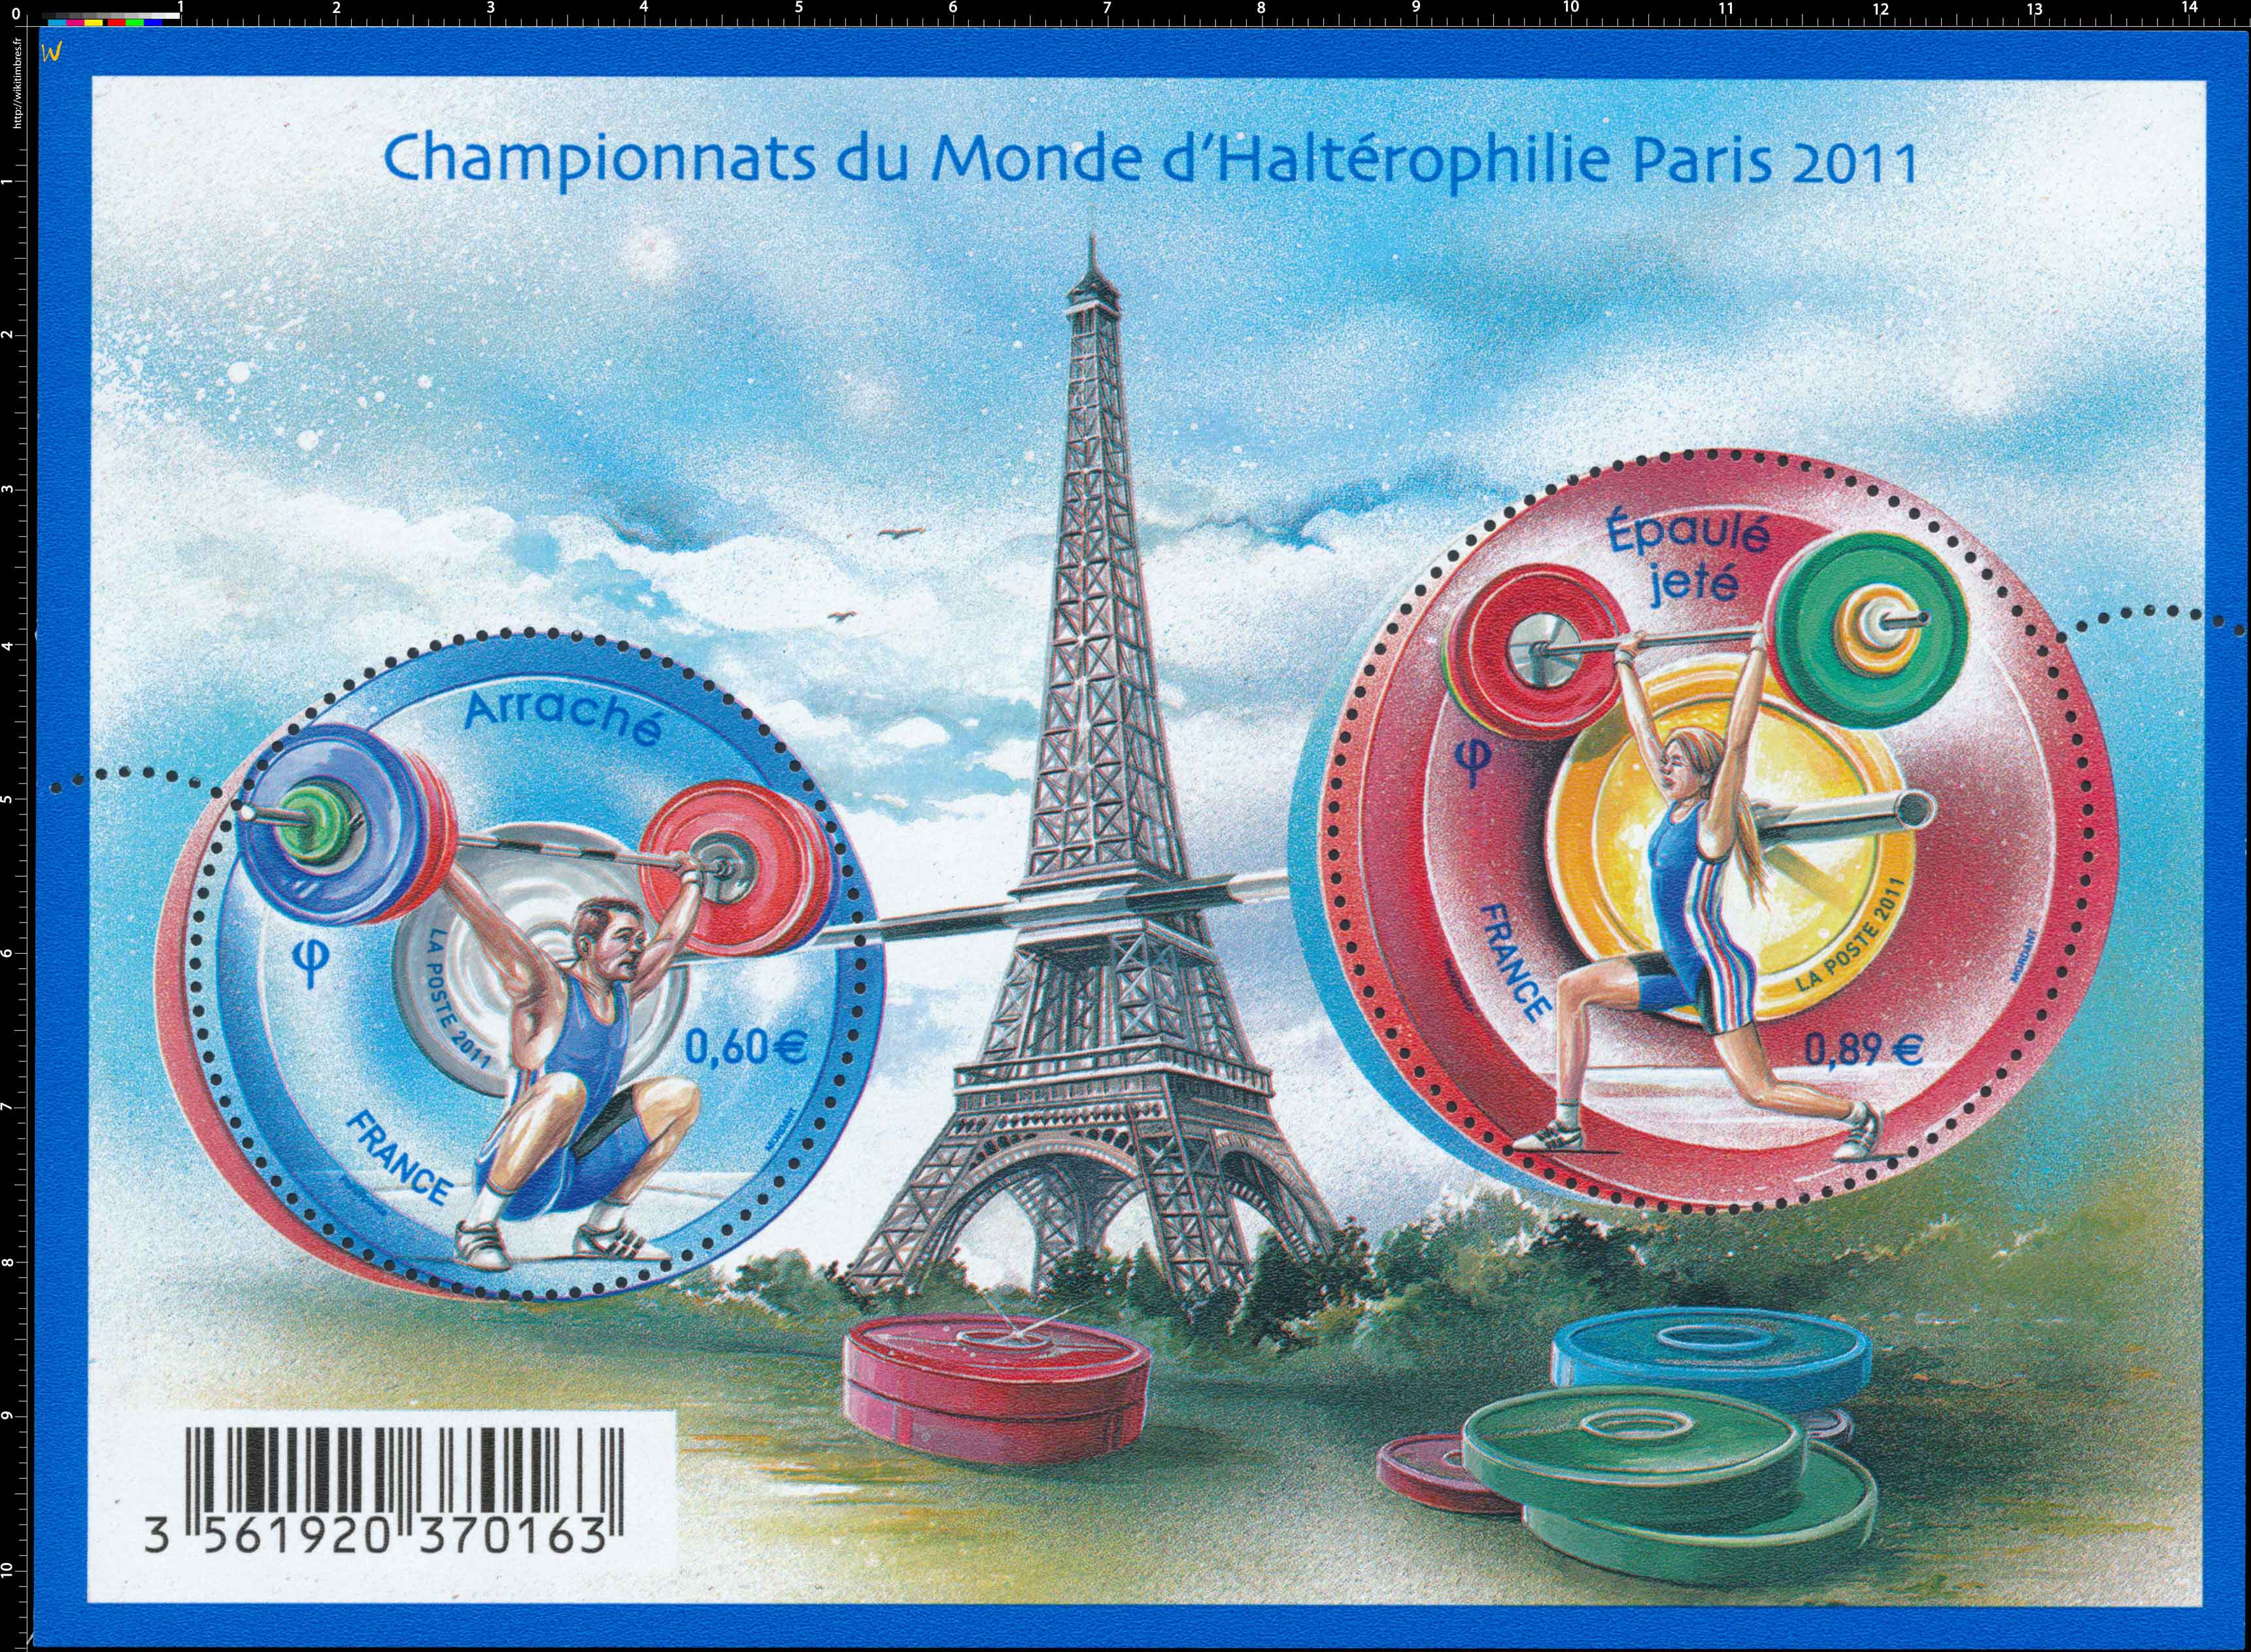 2011 Championnats du monde d'haltérophilie Paris 2011